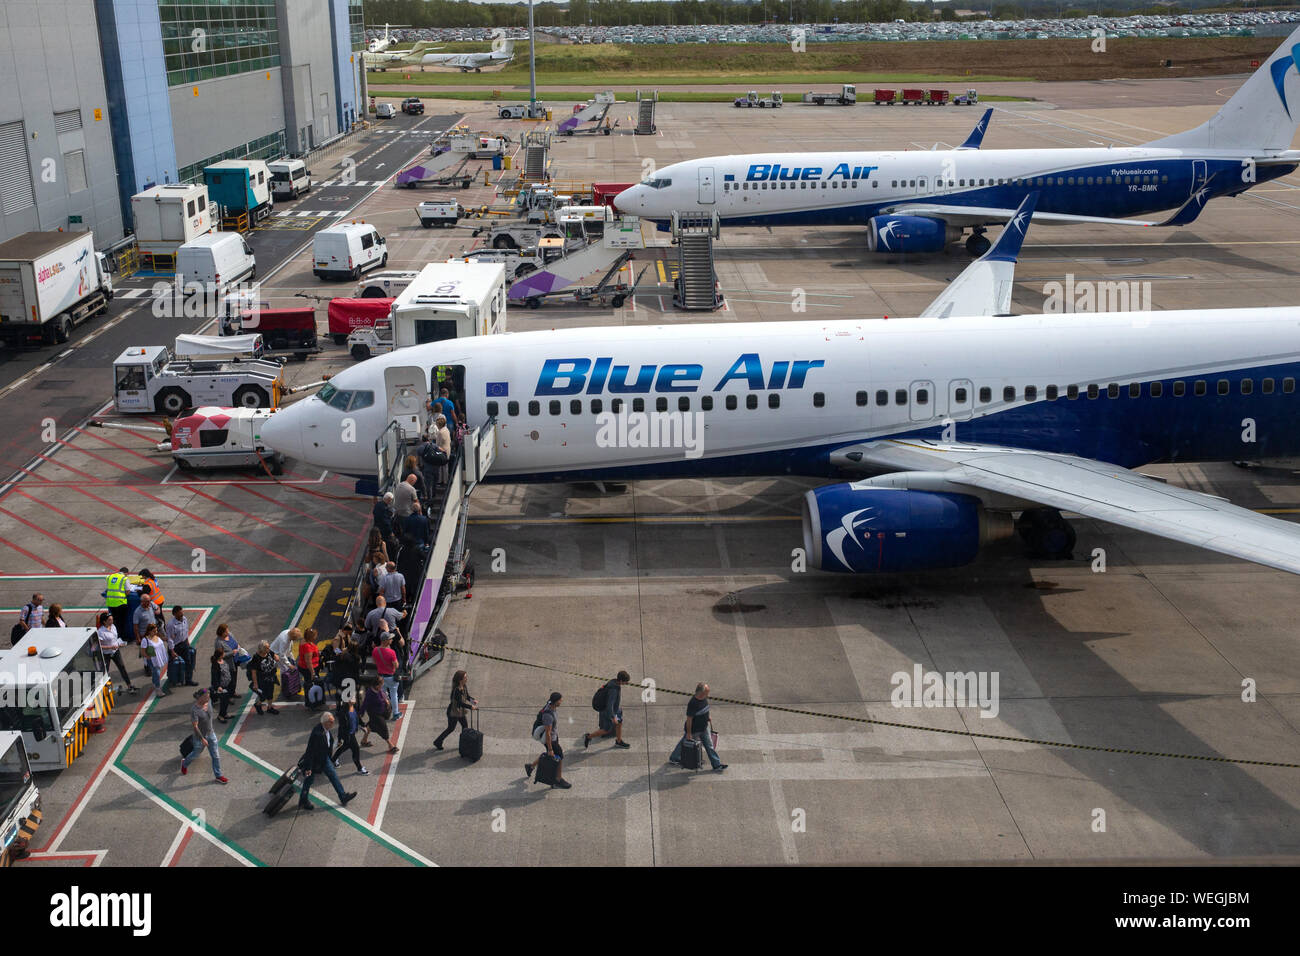 Blue Air avions sur le tarmac de l'aéroport de Luton. C'est une compagnie  aérienne roumaine fondée par Nelu Iordache, basé à Bucarest Photo Stock -  Alamy